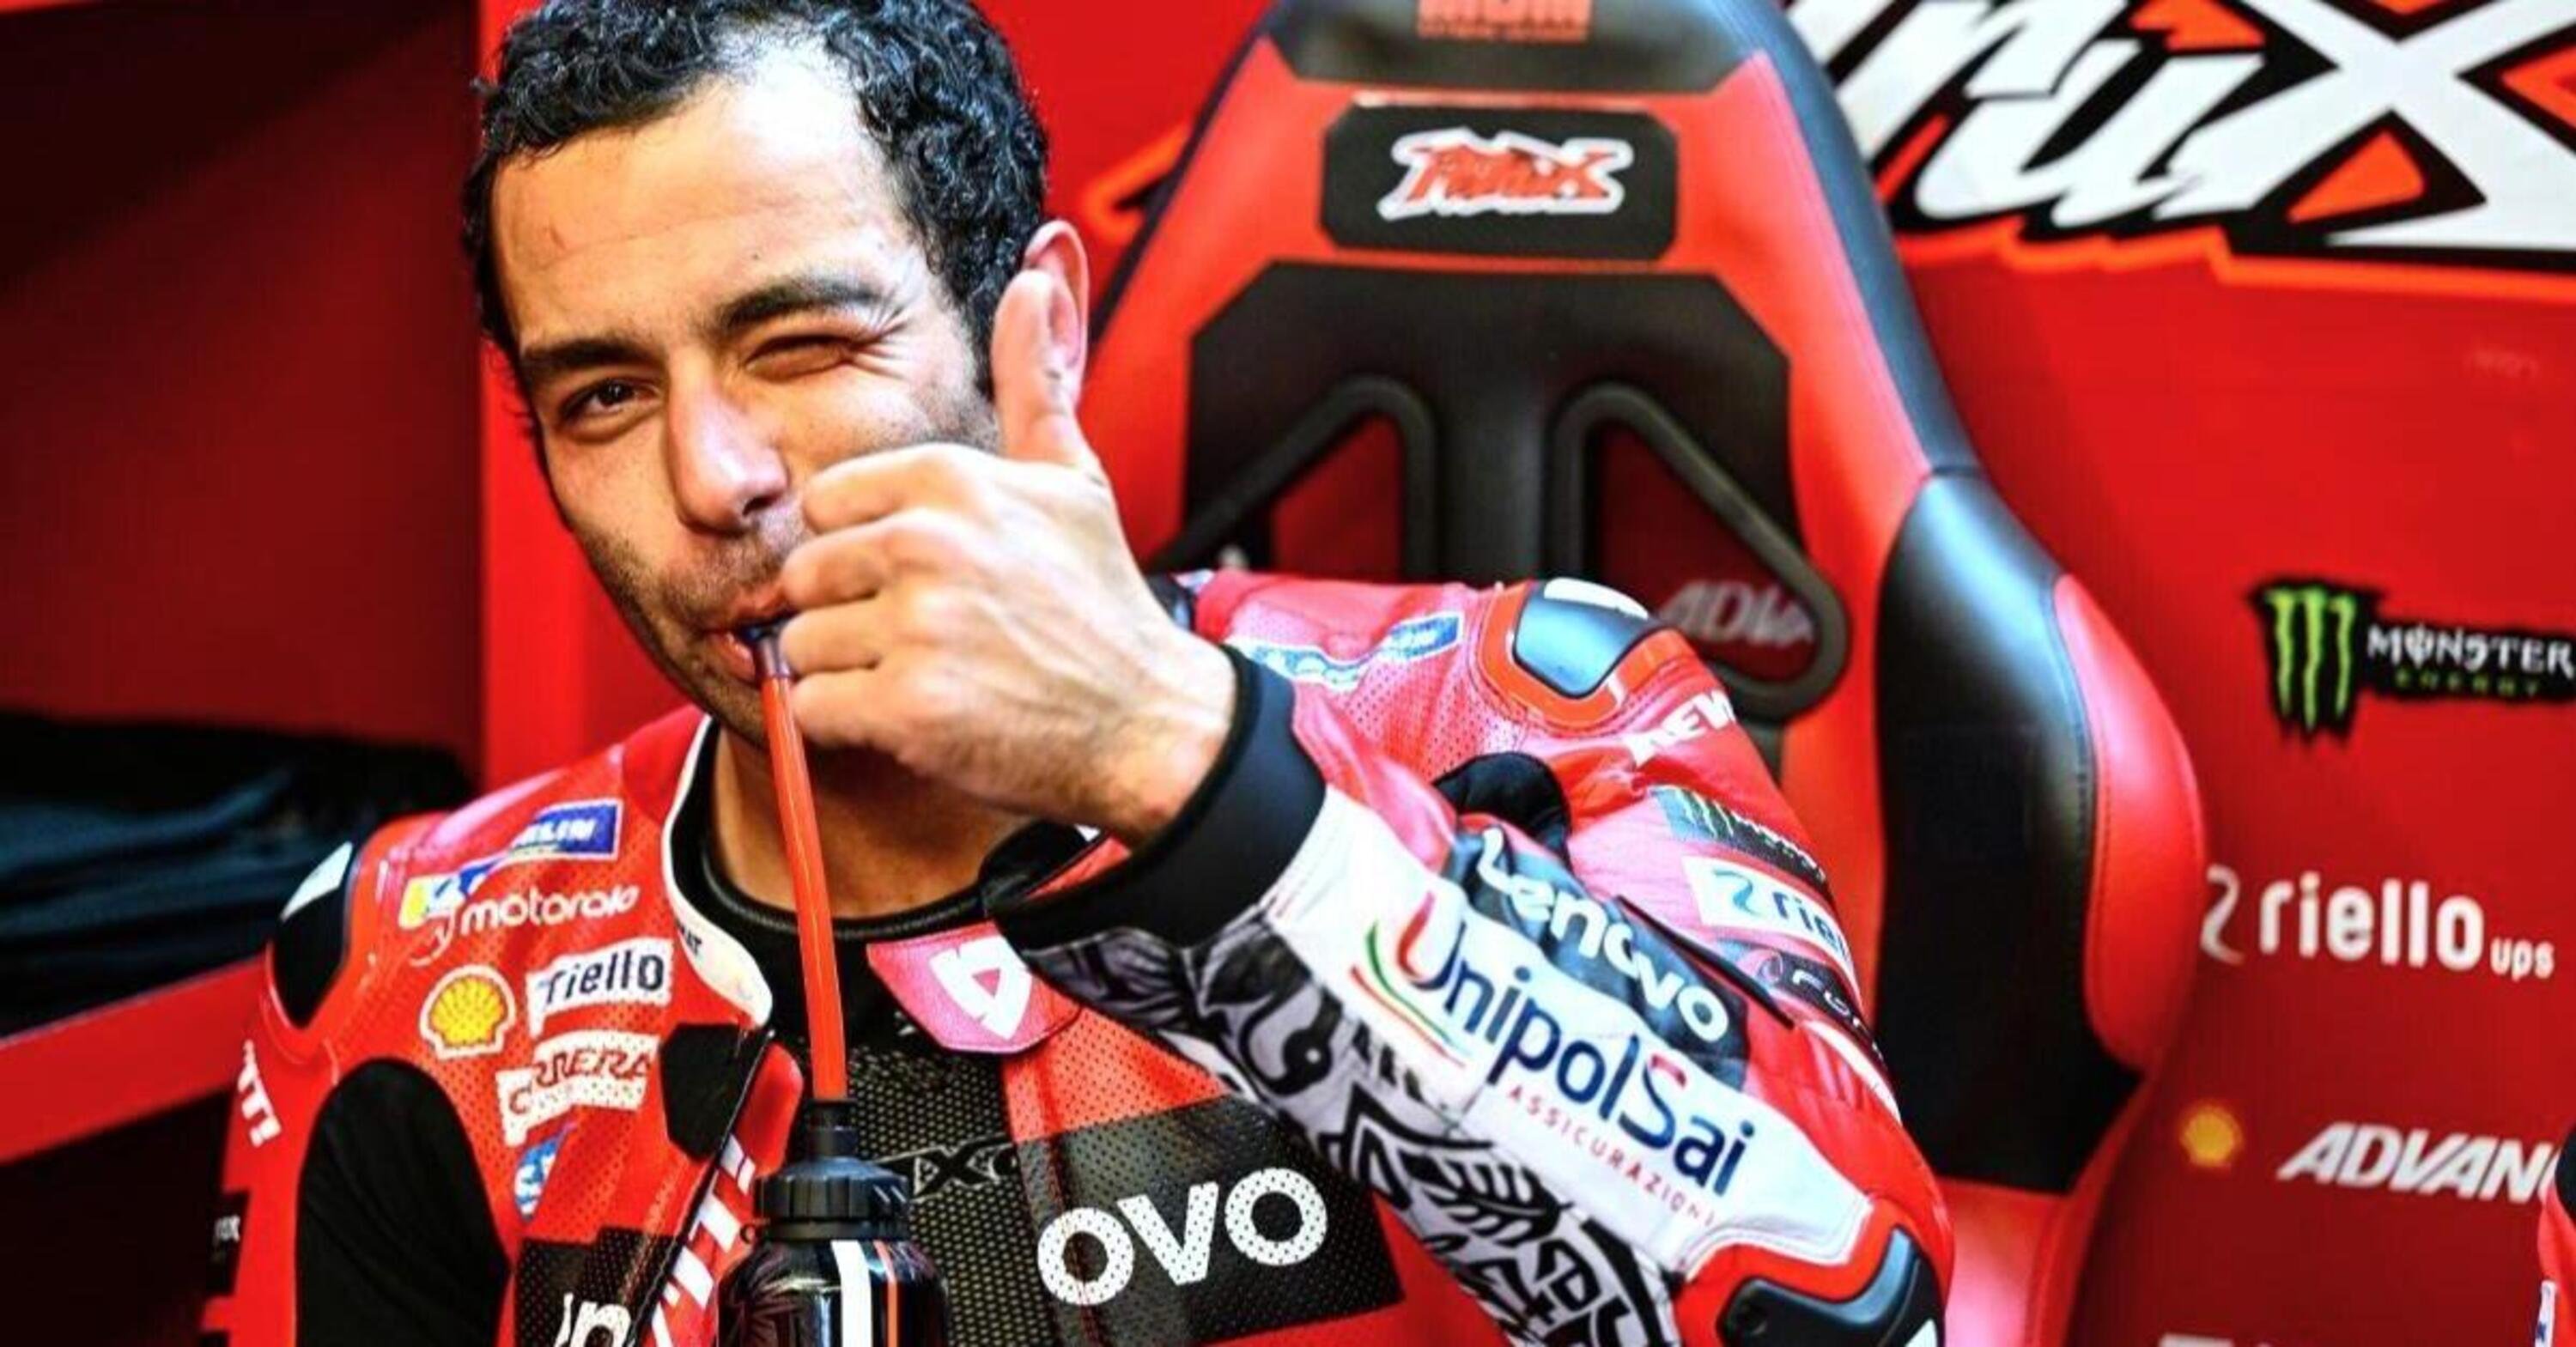 MotoGP 2023. GP de France au Mans. Danilo Petrucci explique cette Ducati : "La meilleure moto que j'ai conduite de ma vie", c'est pourquoi;